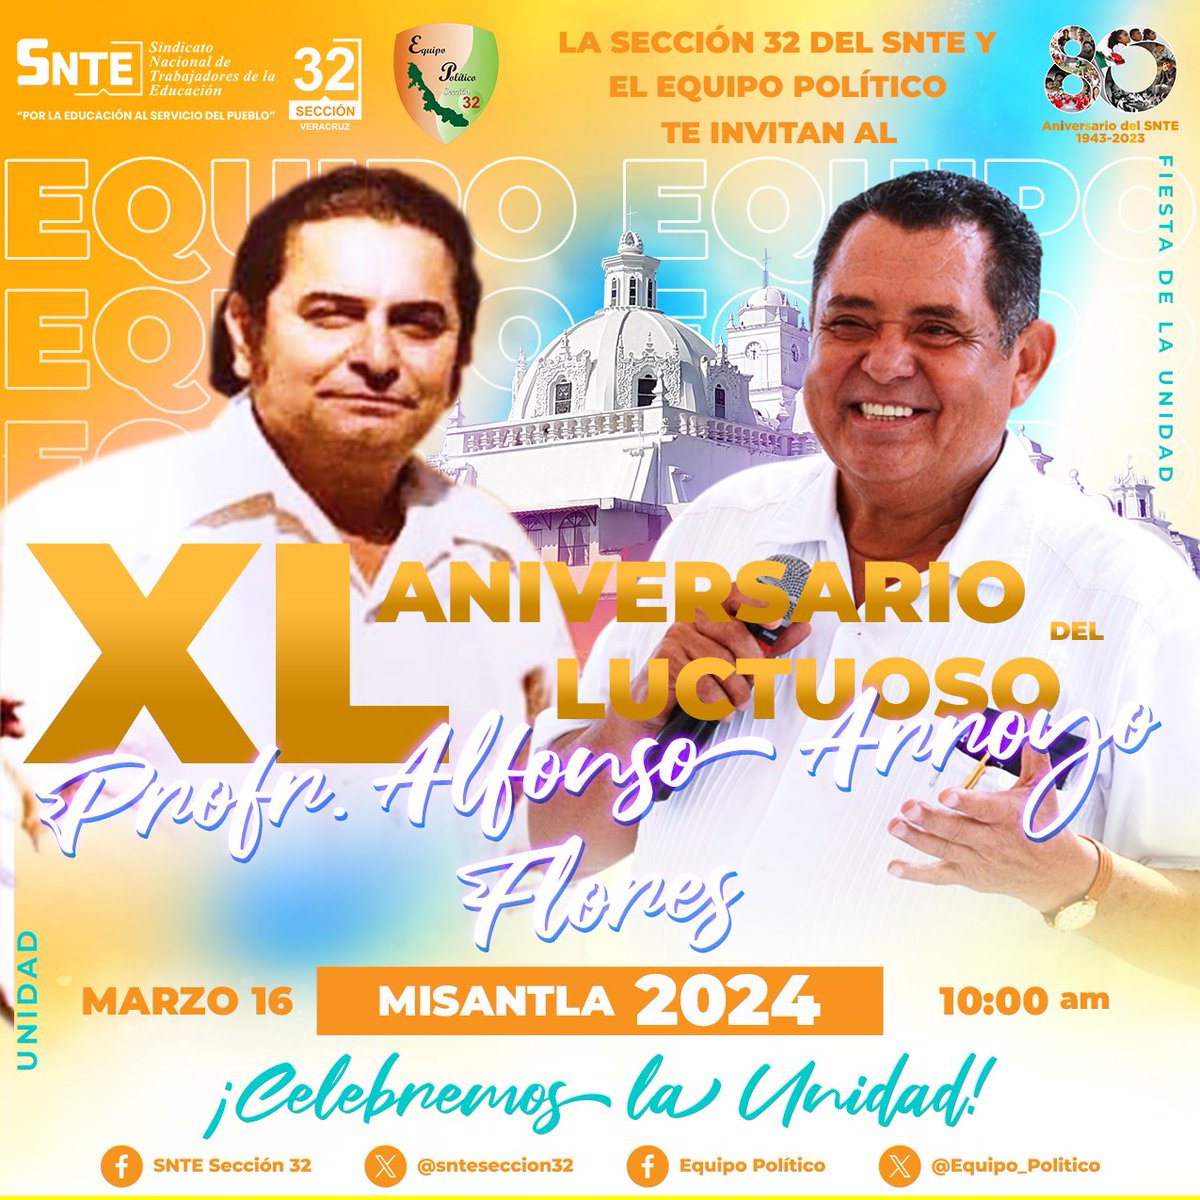 Están invitados a la ¡Gran fiesta de la Unidad! El XL Aniversario Luctuoso del Profr. Alfonso Arroyo Flores. ¡Celebremos la UNIDAD! 16 de marzo, Misantla, Ver. ...¡Juntos, siempre vamos a triunfar! ¡Allá nos vemos! #SNTE32 #EquipoPolítico #Misantla2024 -15 días.